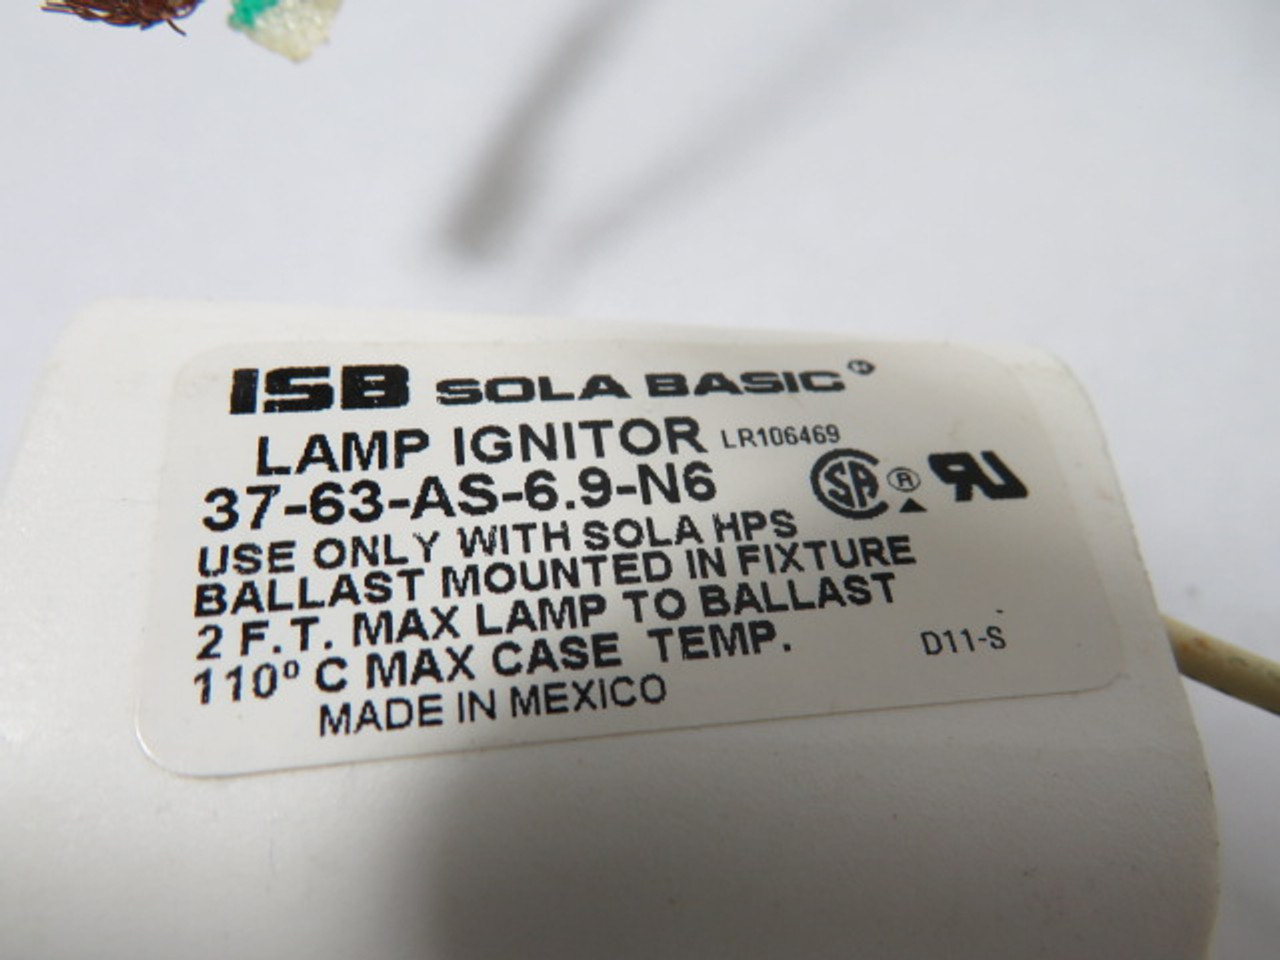 ISB Sola Basic E-SIADDZ400 Transformer 480/600V 1.05/0.84A 60HZ USED